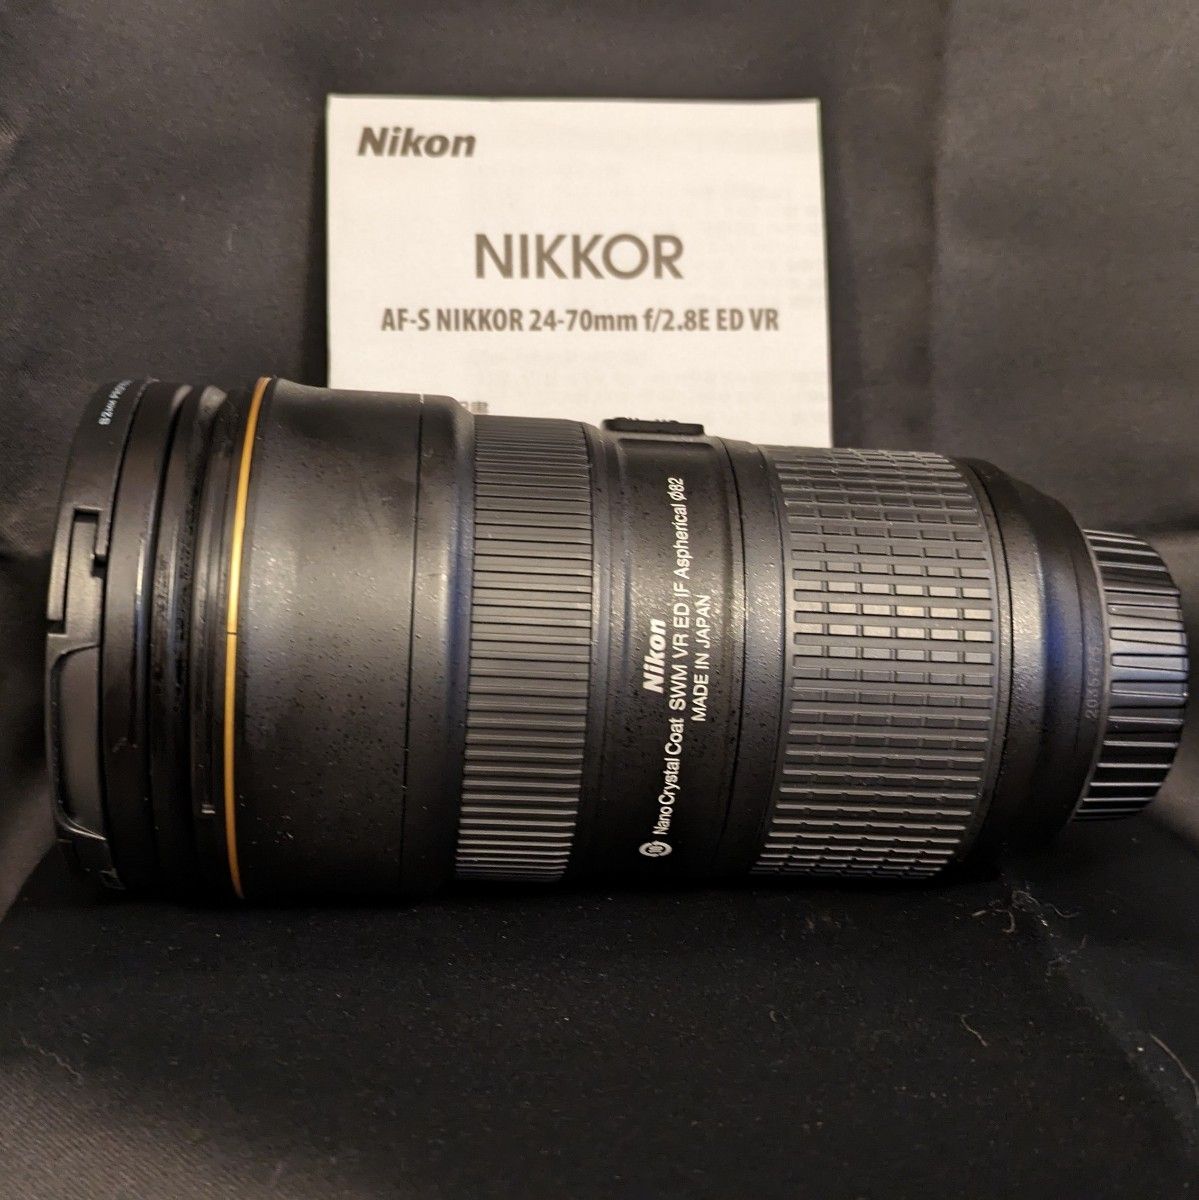 AF-S Nikkor 24-70mm f/2.8E ED VR